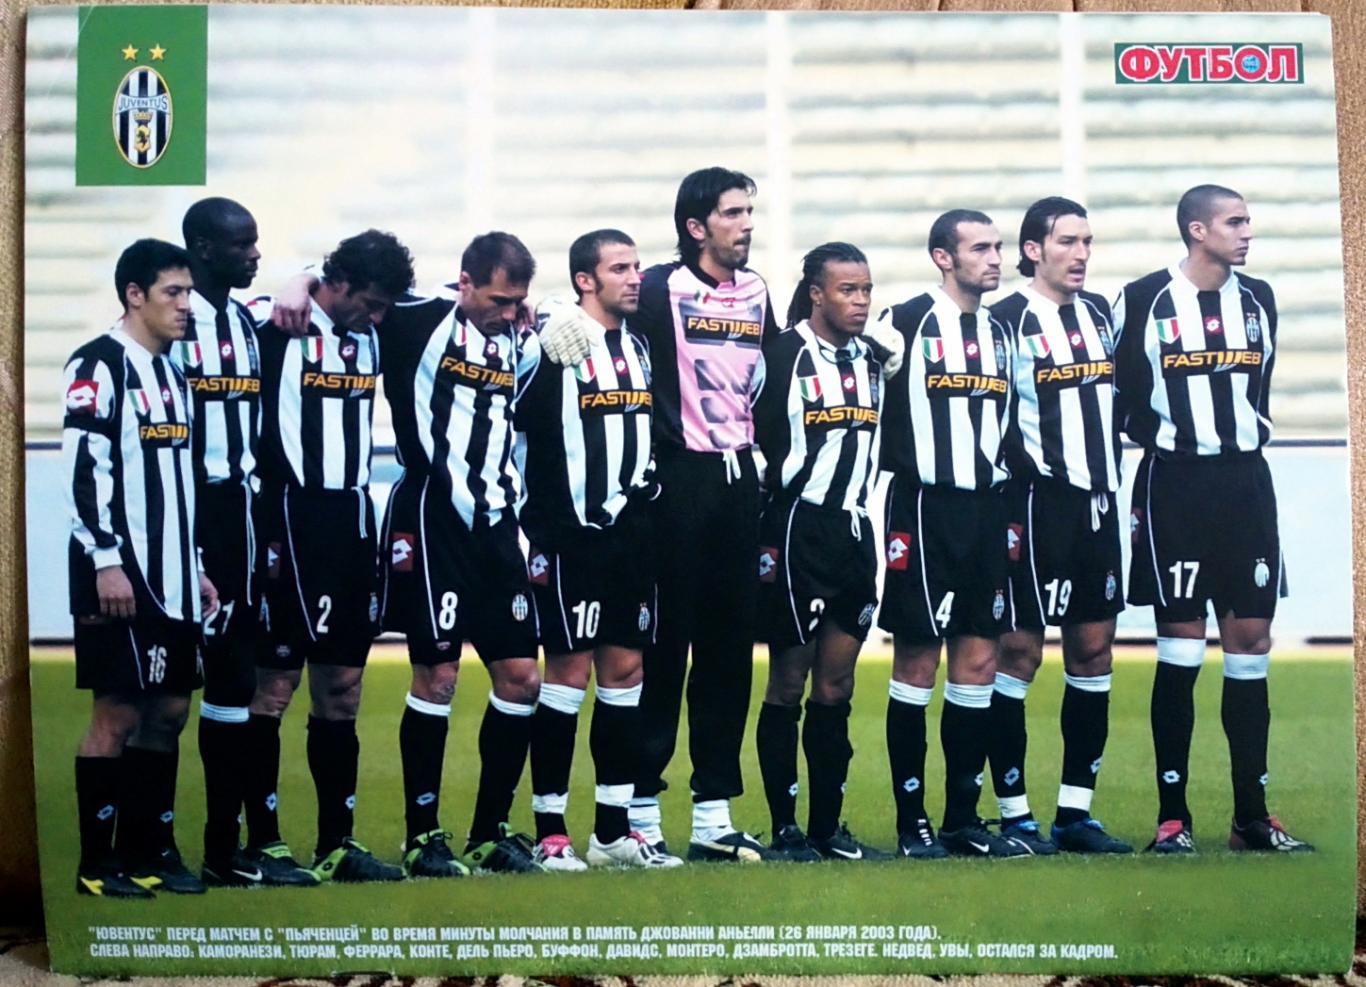 Журнал. Футбол. N 40/2001. Постери Ювентус, Батістута. 1